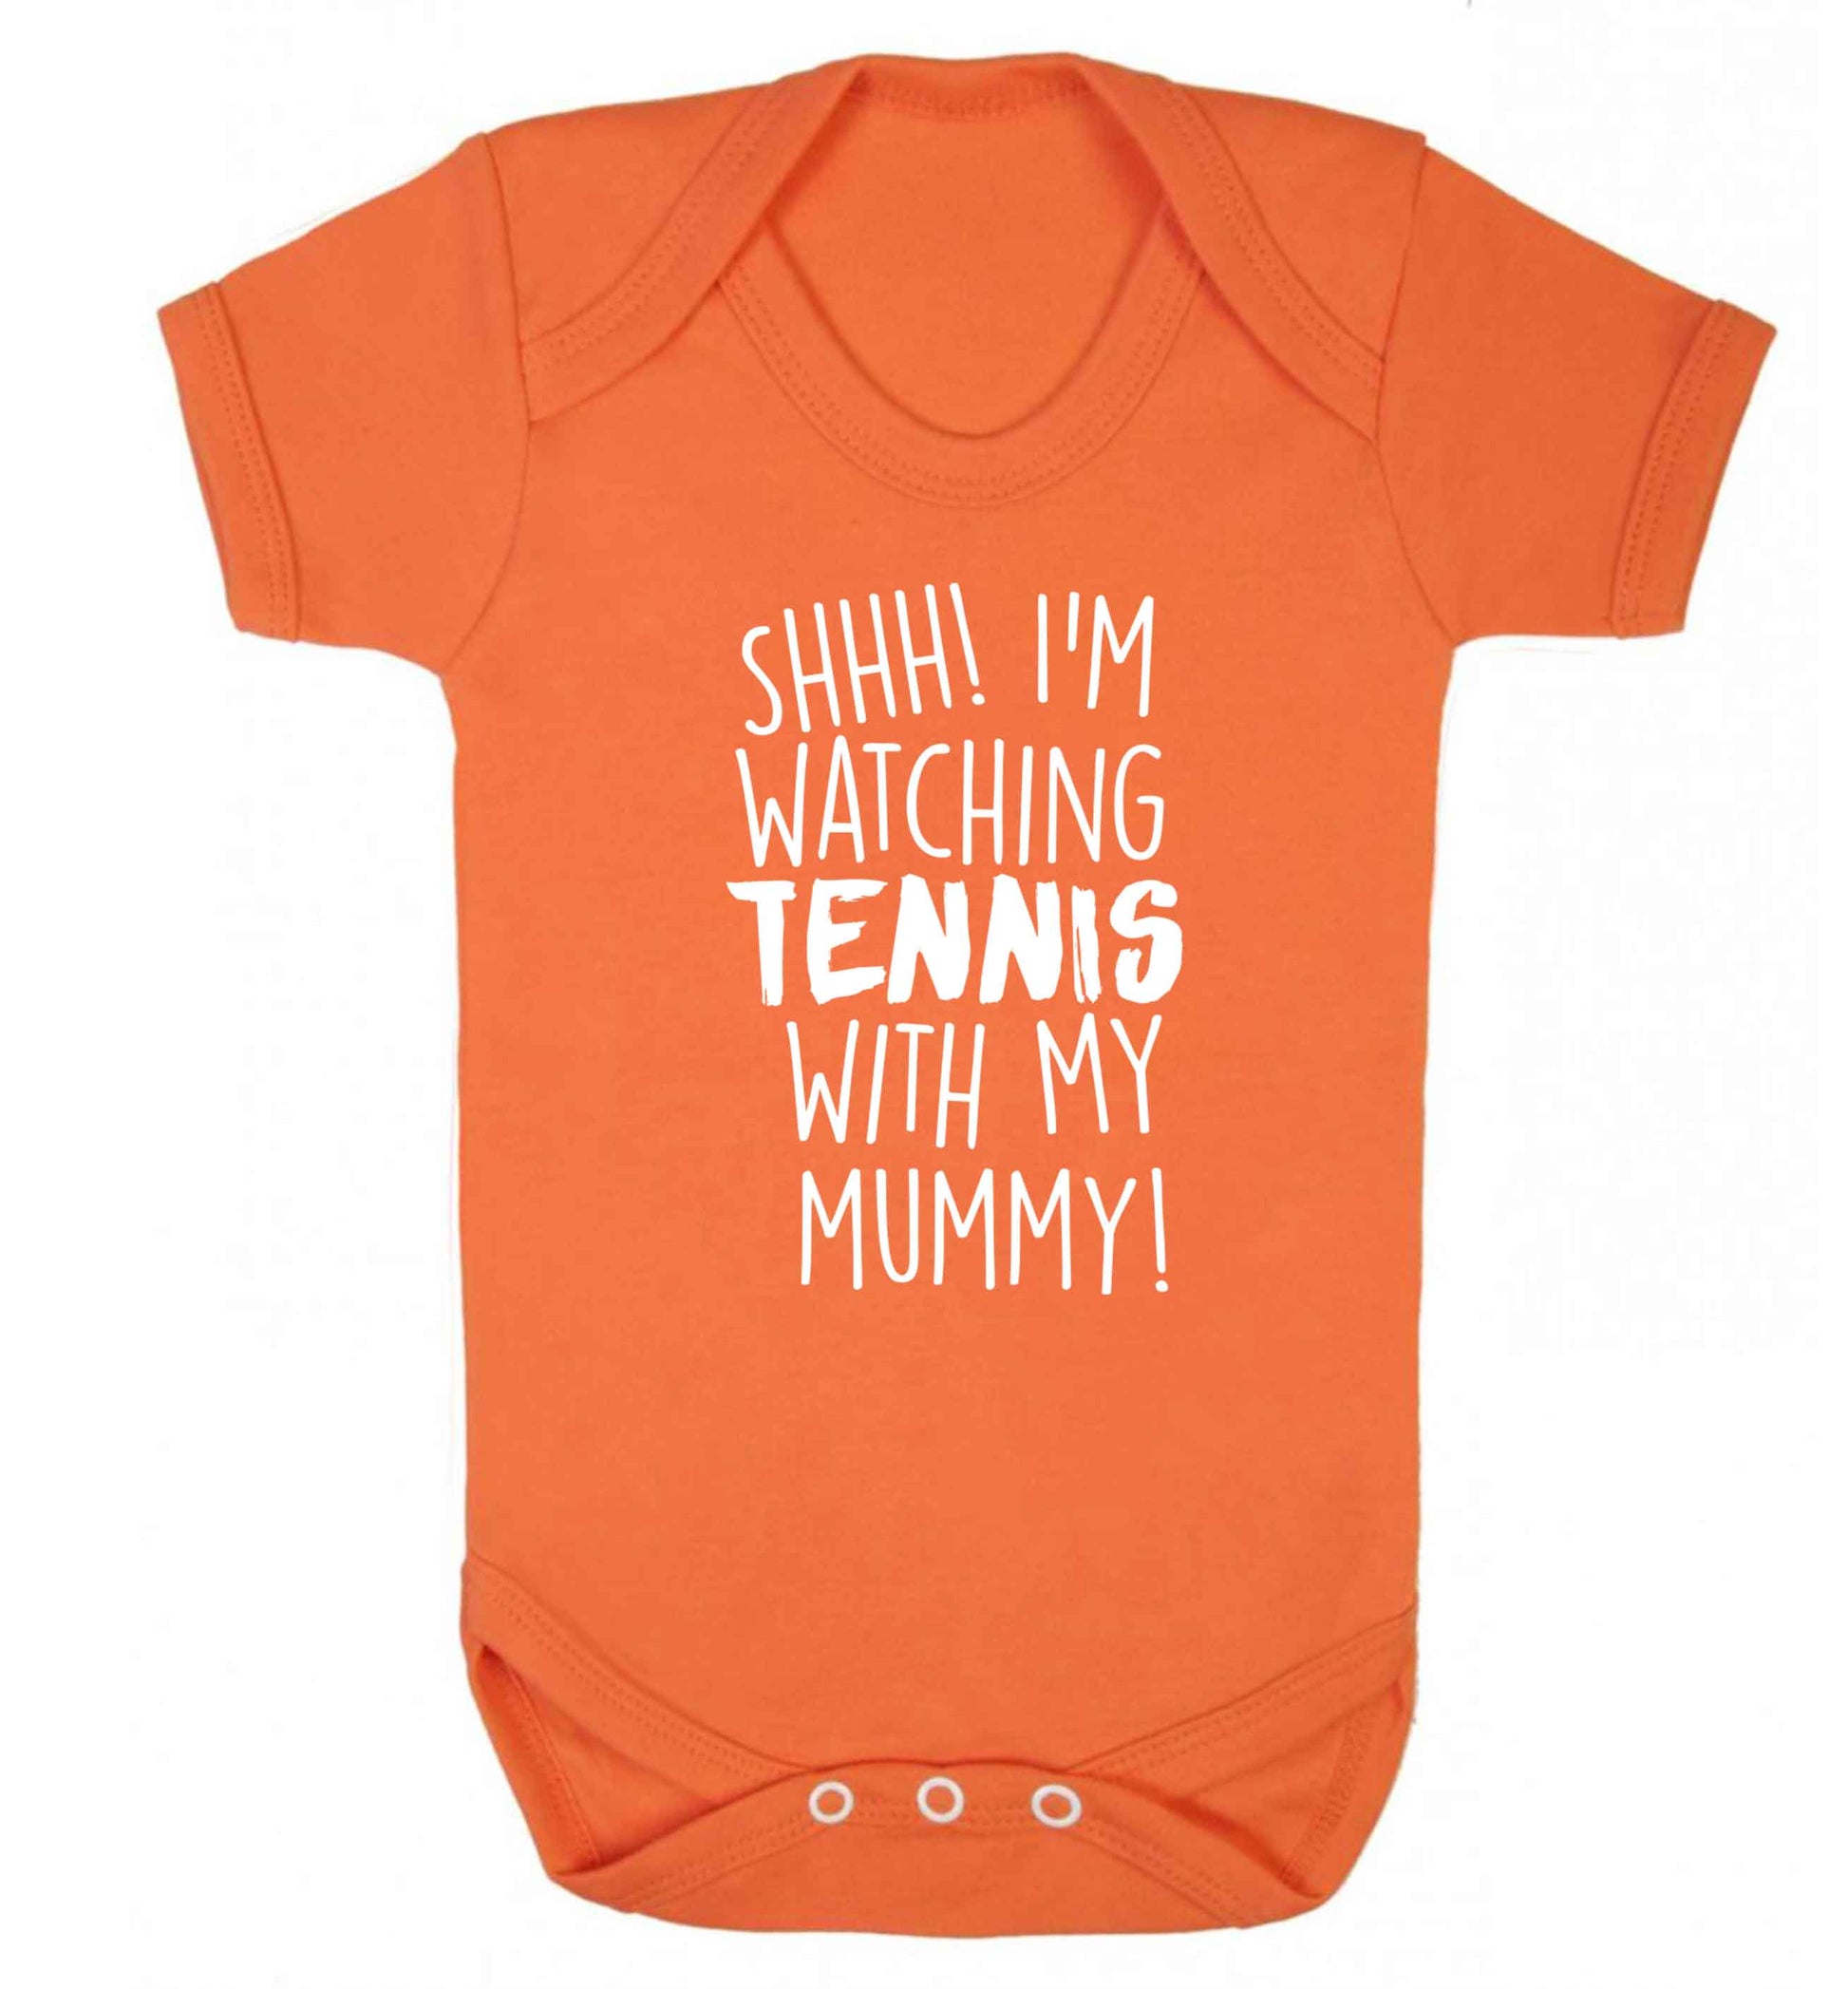 Shh! I'm watching tennis with my mummy! Baby Vest orange 18-24 months